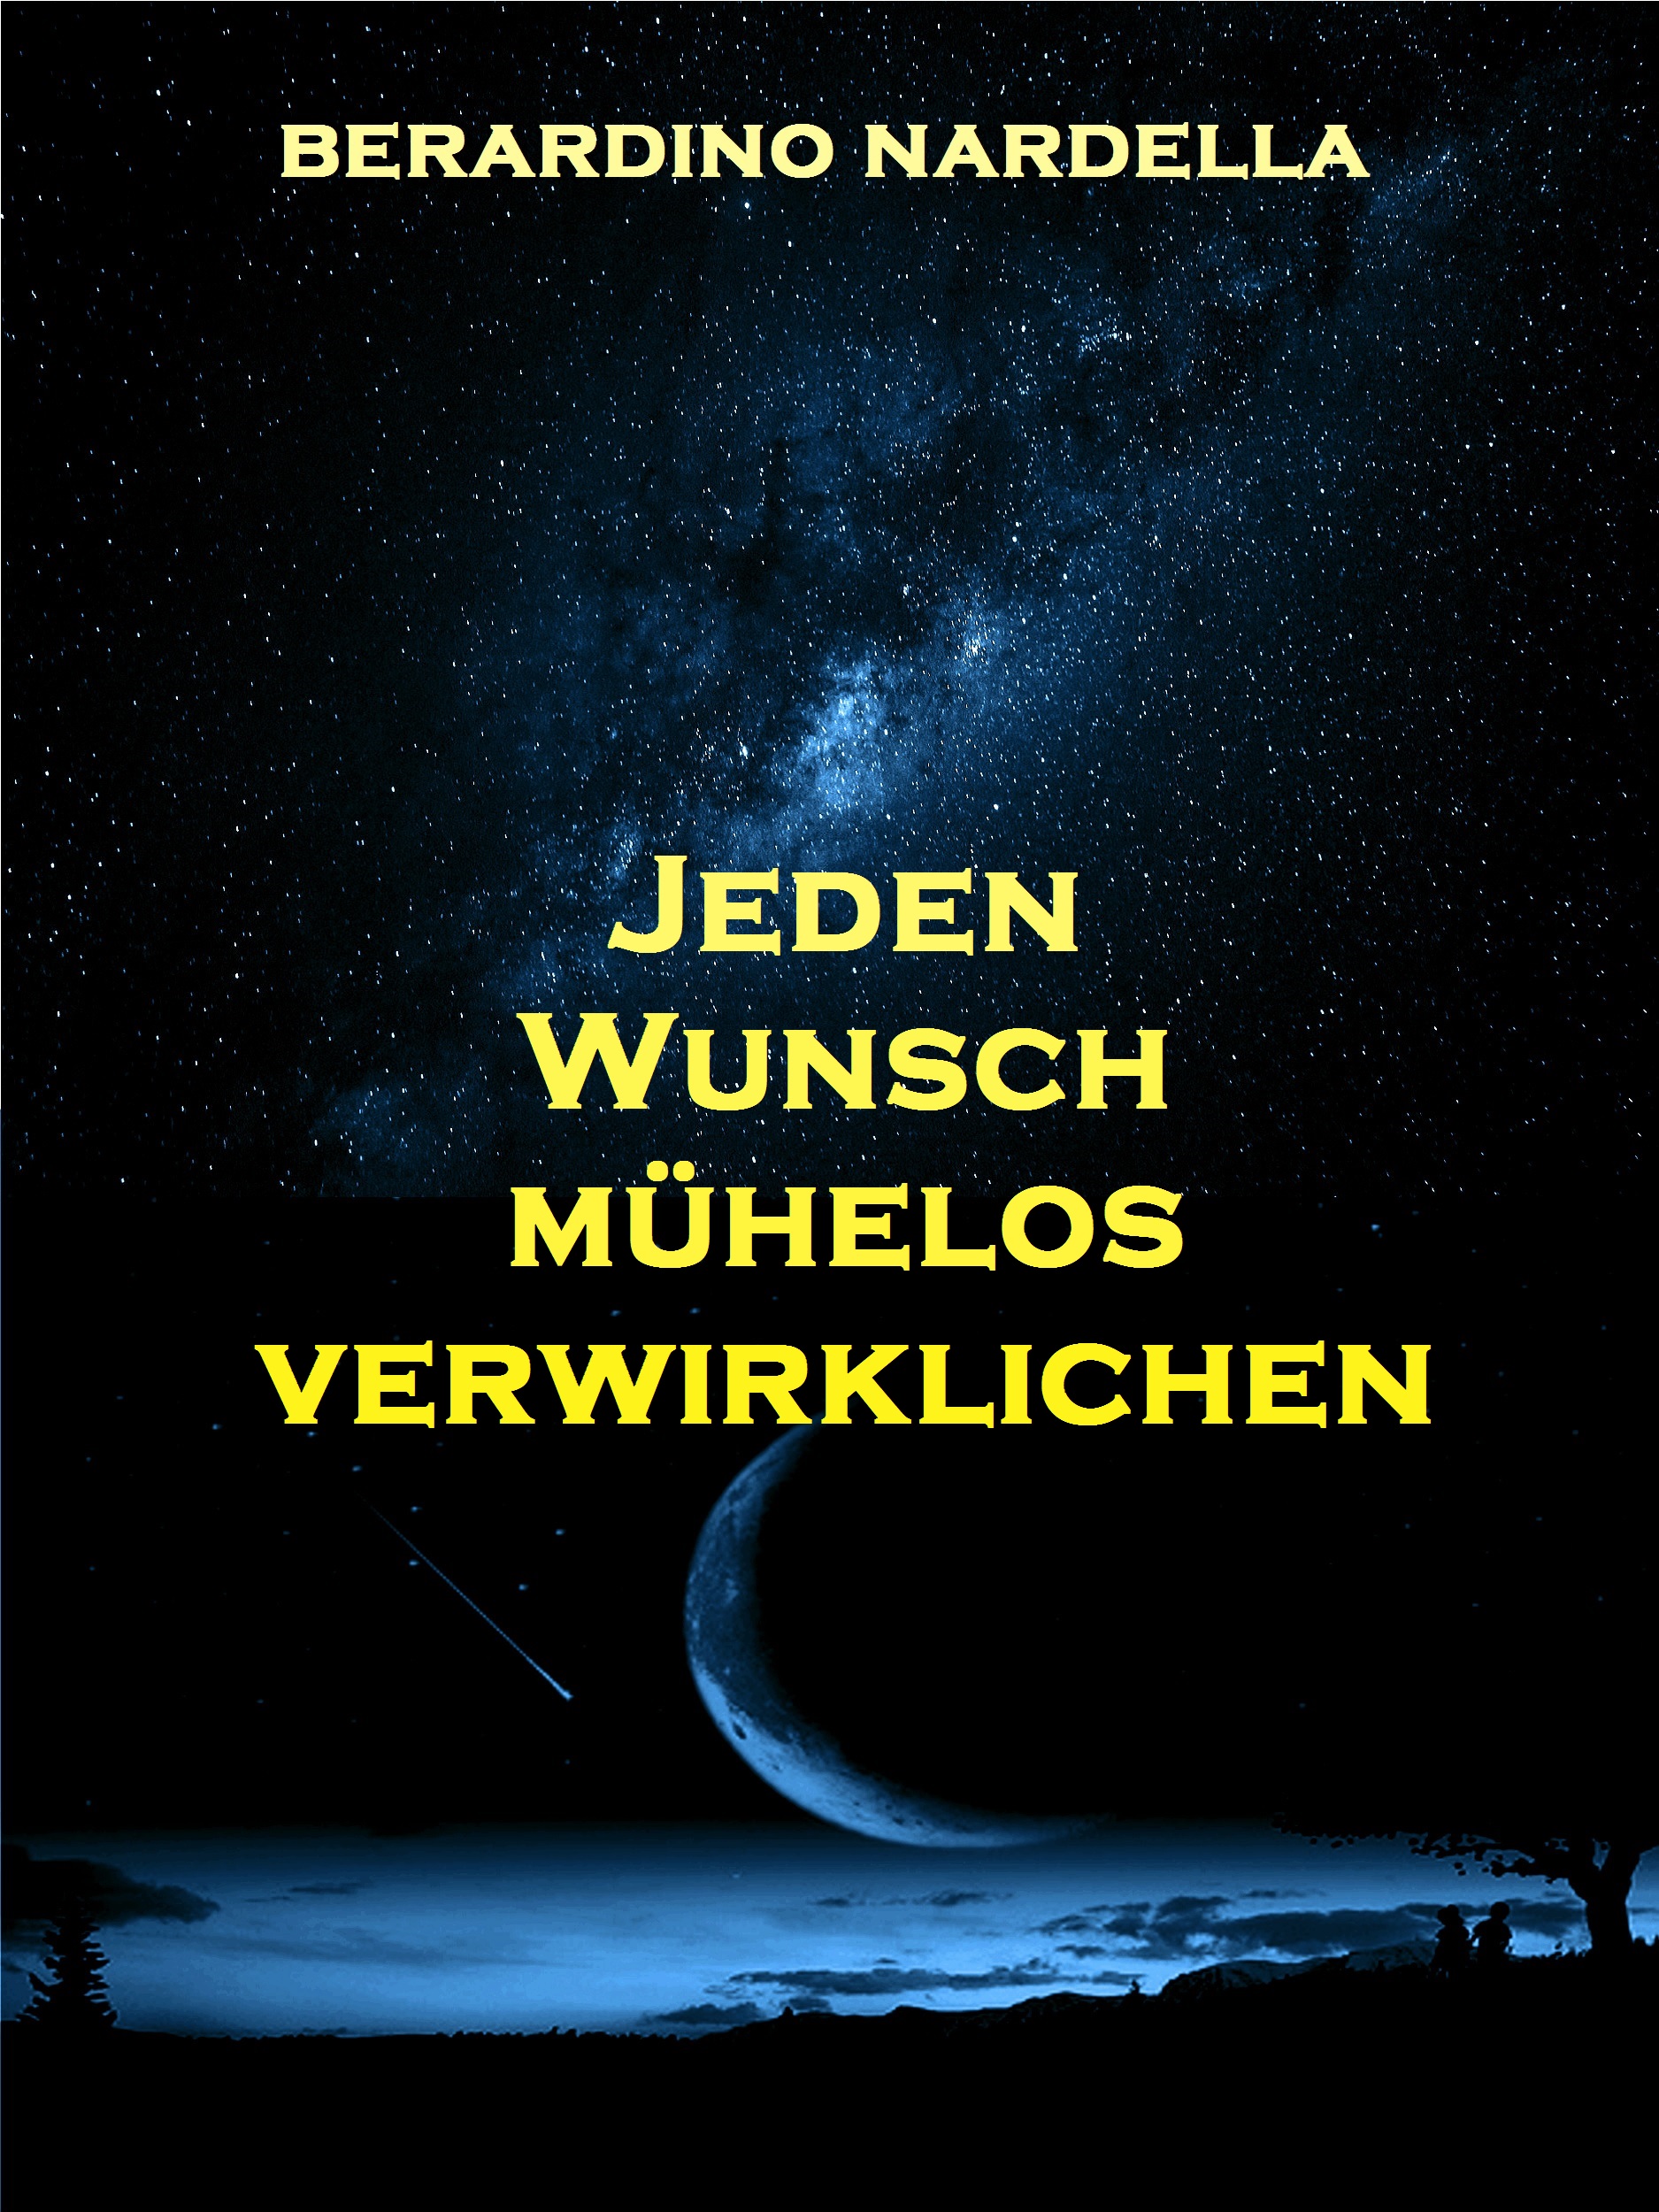 Книга Jeden Wunsch Mühelos Verwirklichen из серии , созданная Берардино Нарделла, может относится к жанру Личностный рост. Стоимость электронной книги Jeden Wunsch Mühelos Verwirklichen с идентификатором 40208823 составляет 272.27 руб.